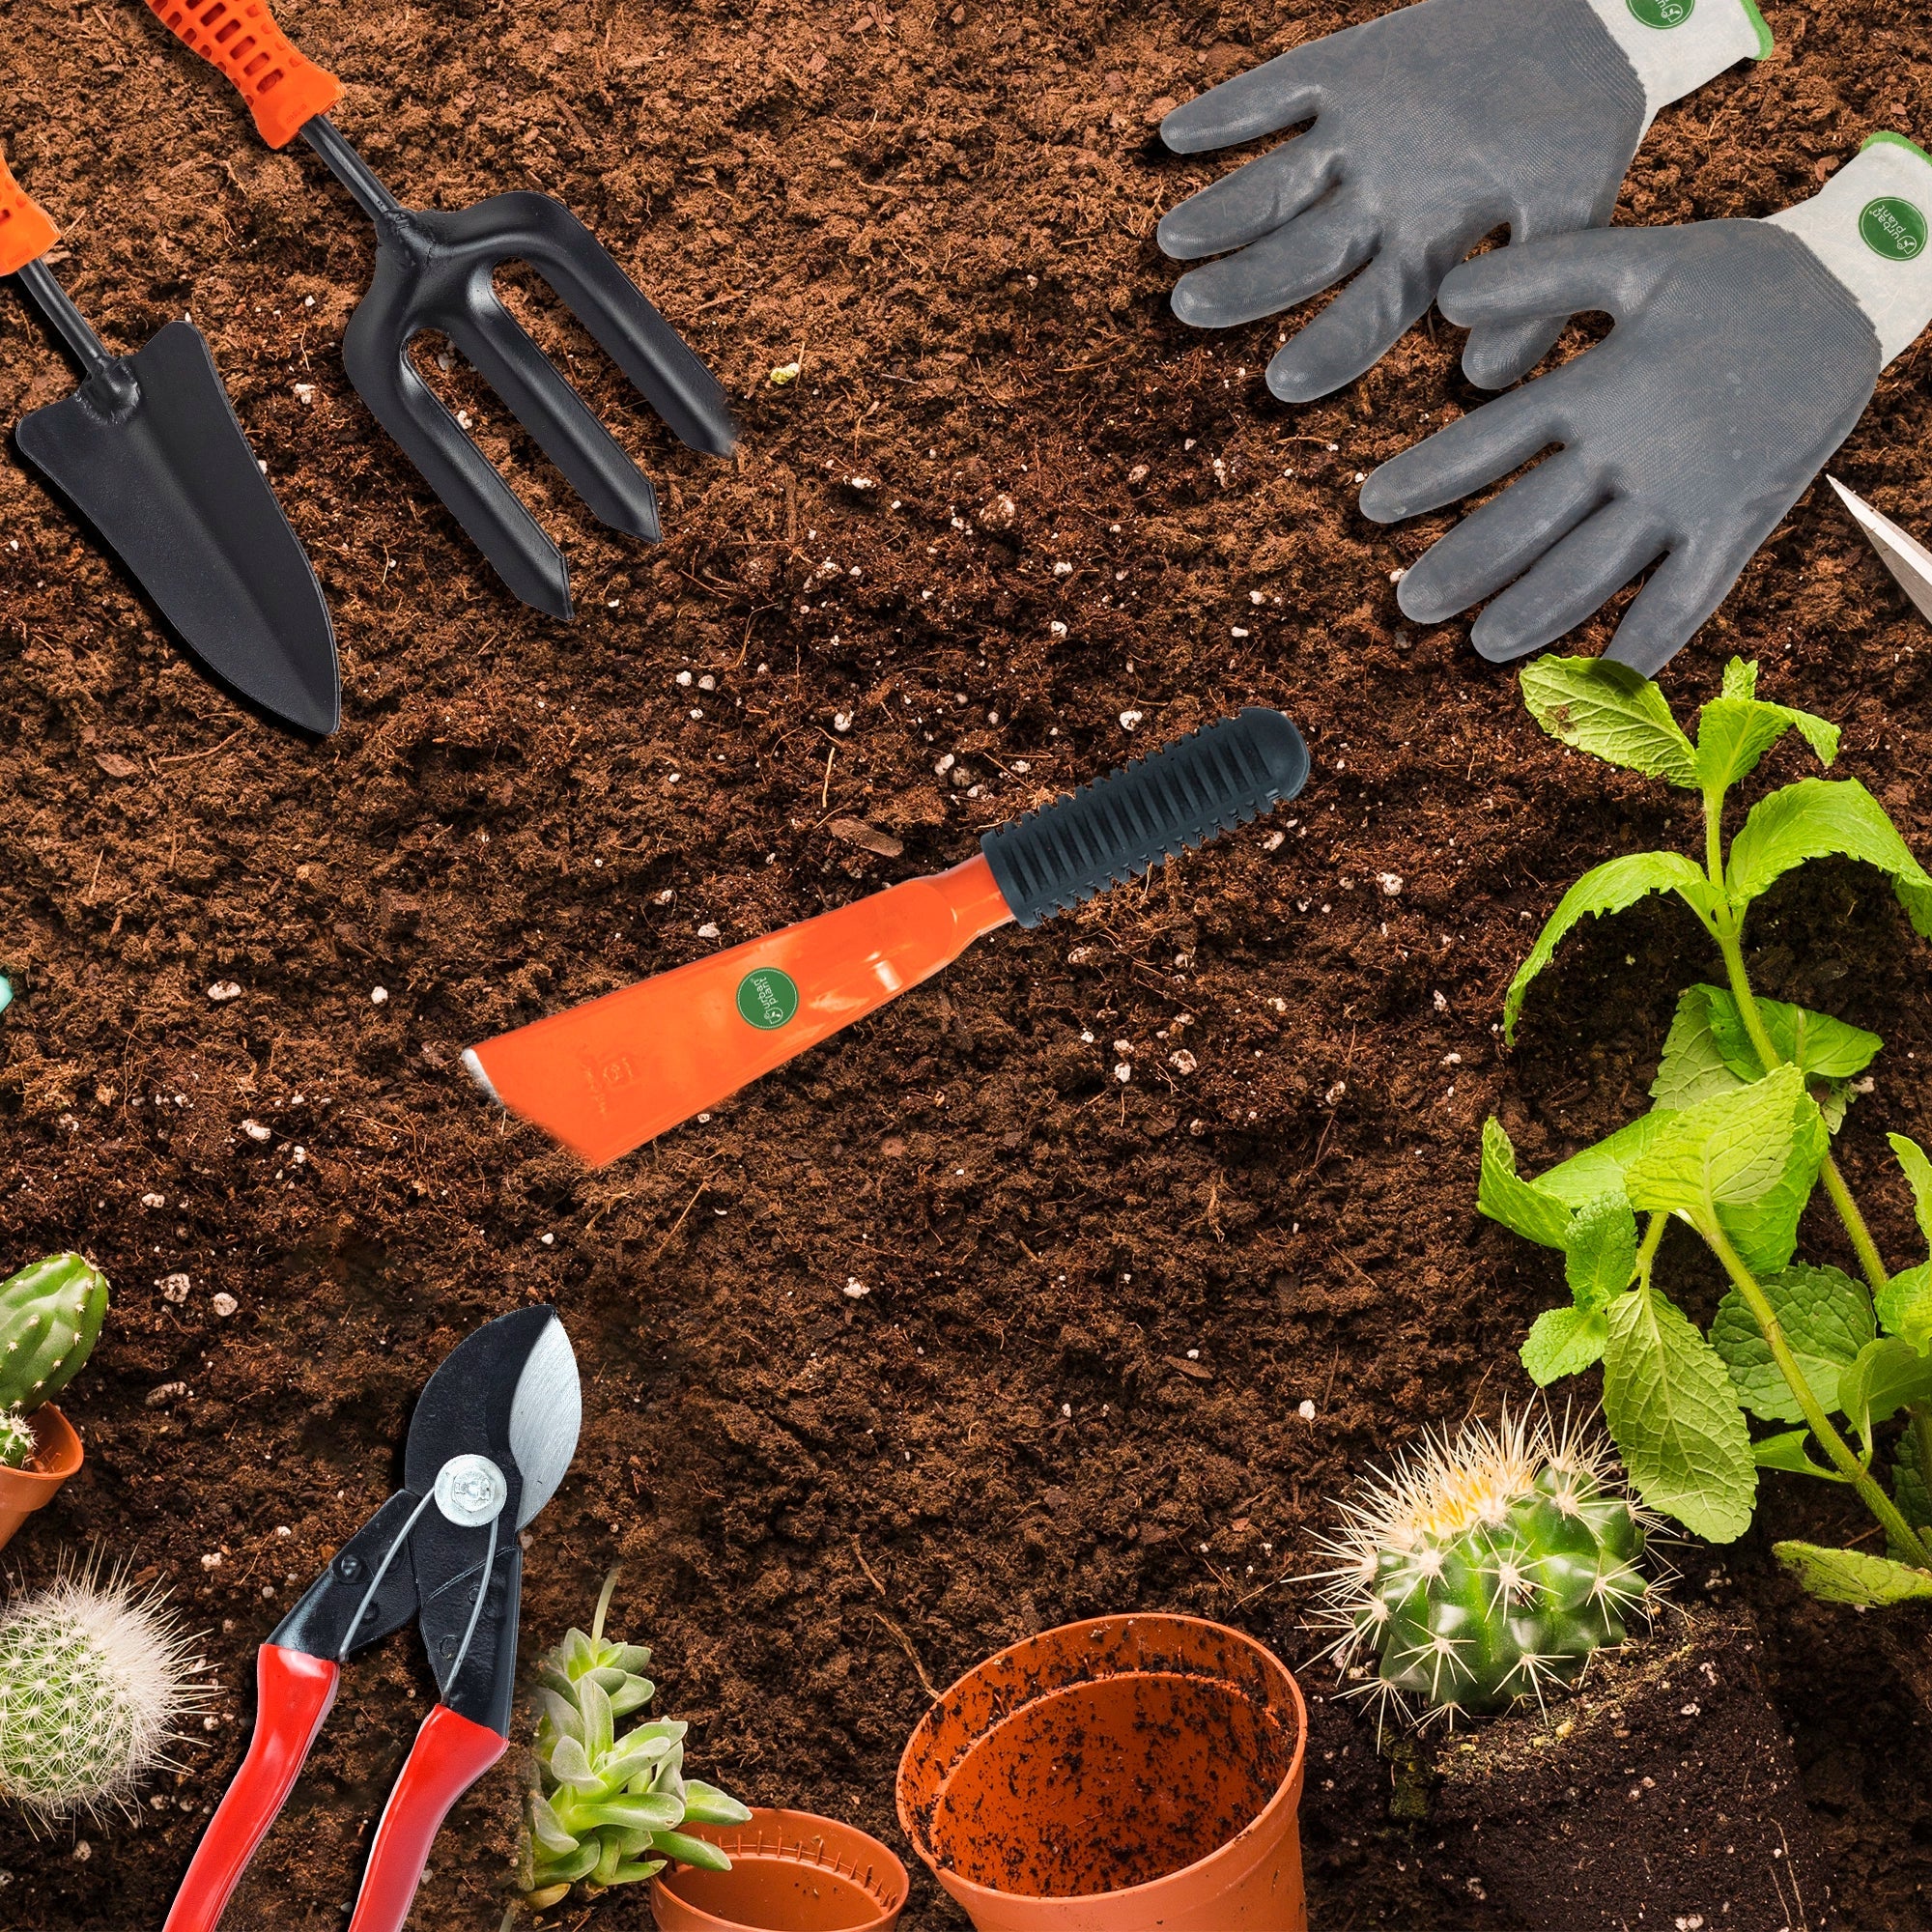 Urban Plant Essential Gardening Tools Kit - 7 Pcs [Khurpi, Cultivator, Fork, Trowel, Weeder, Pruner & Gloves] Urban Plant 